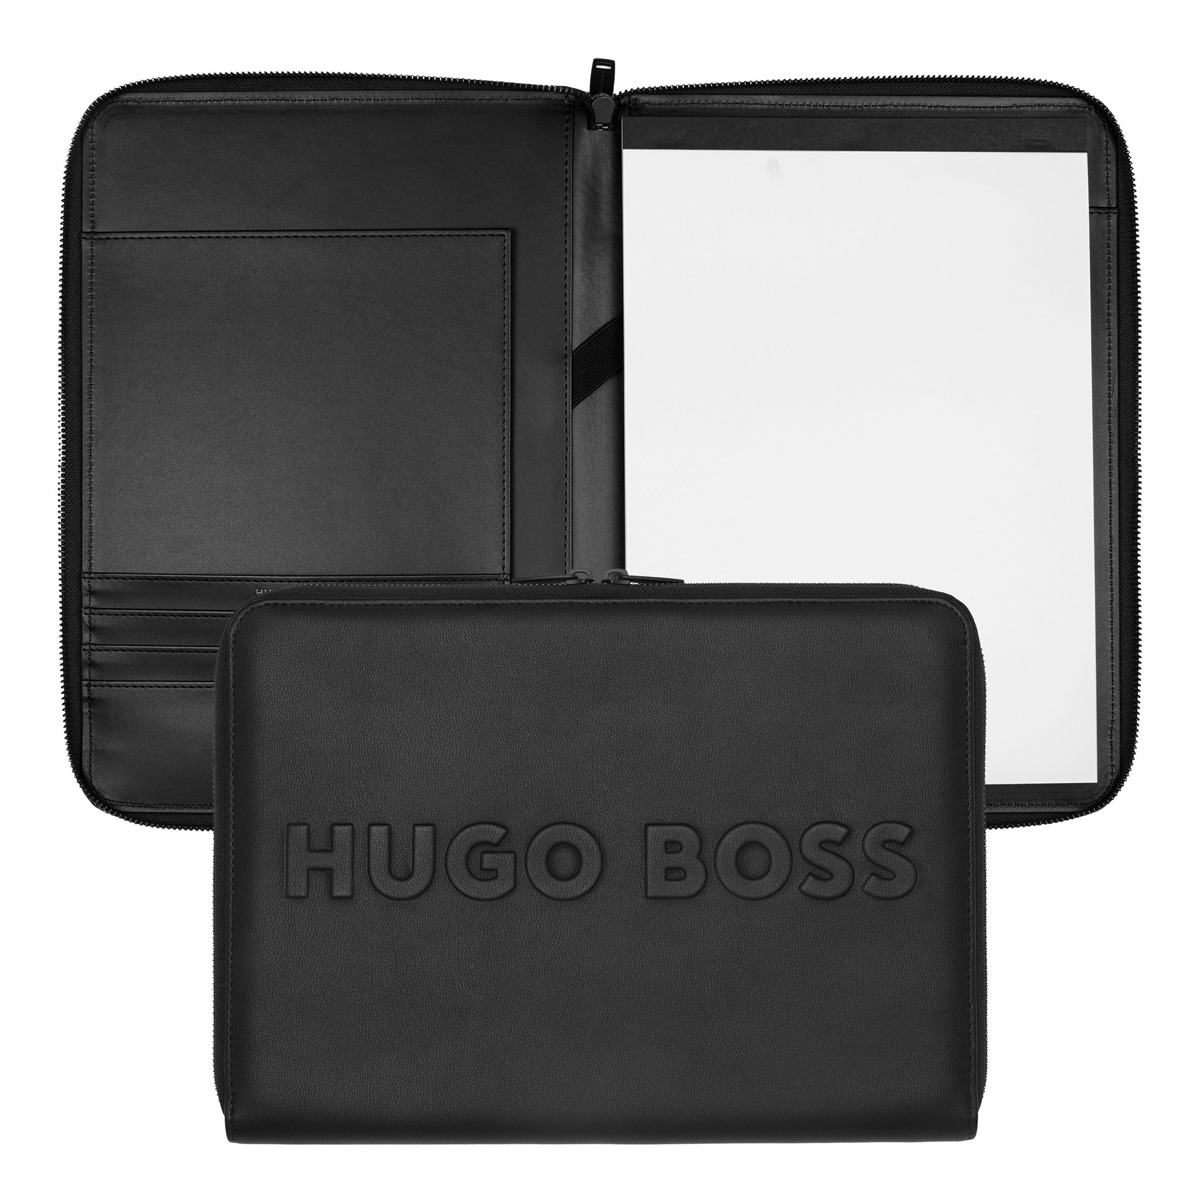 Hugo Boss - Carpeta Cremallera A4 Label Negra Barato